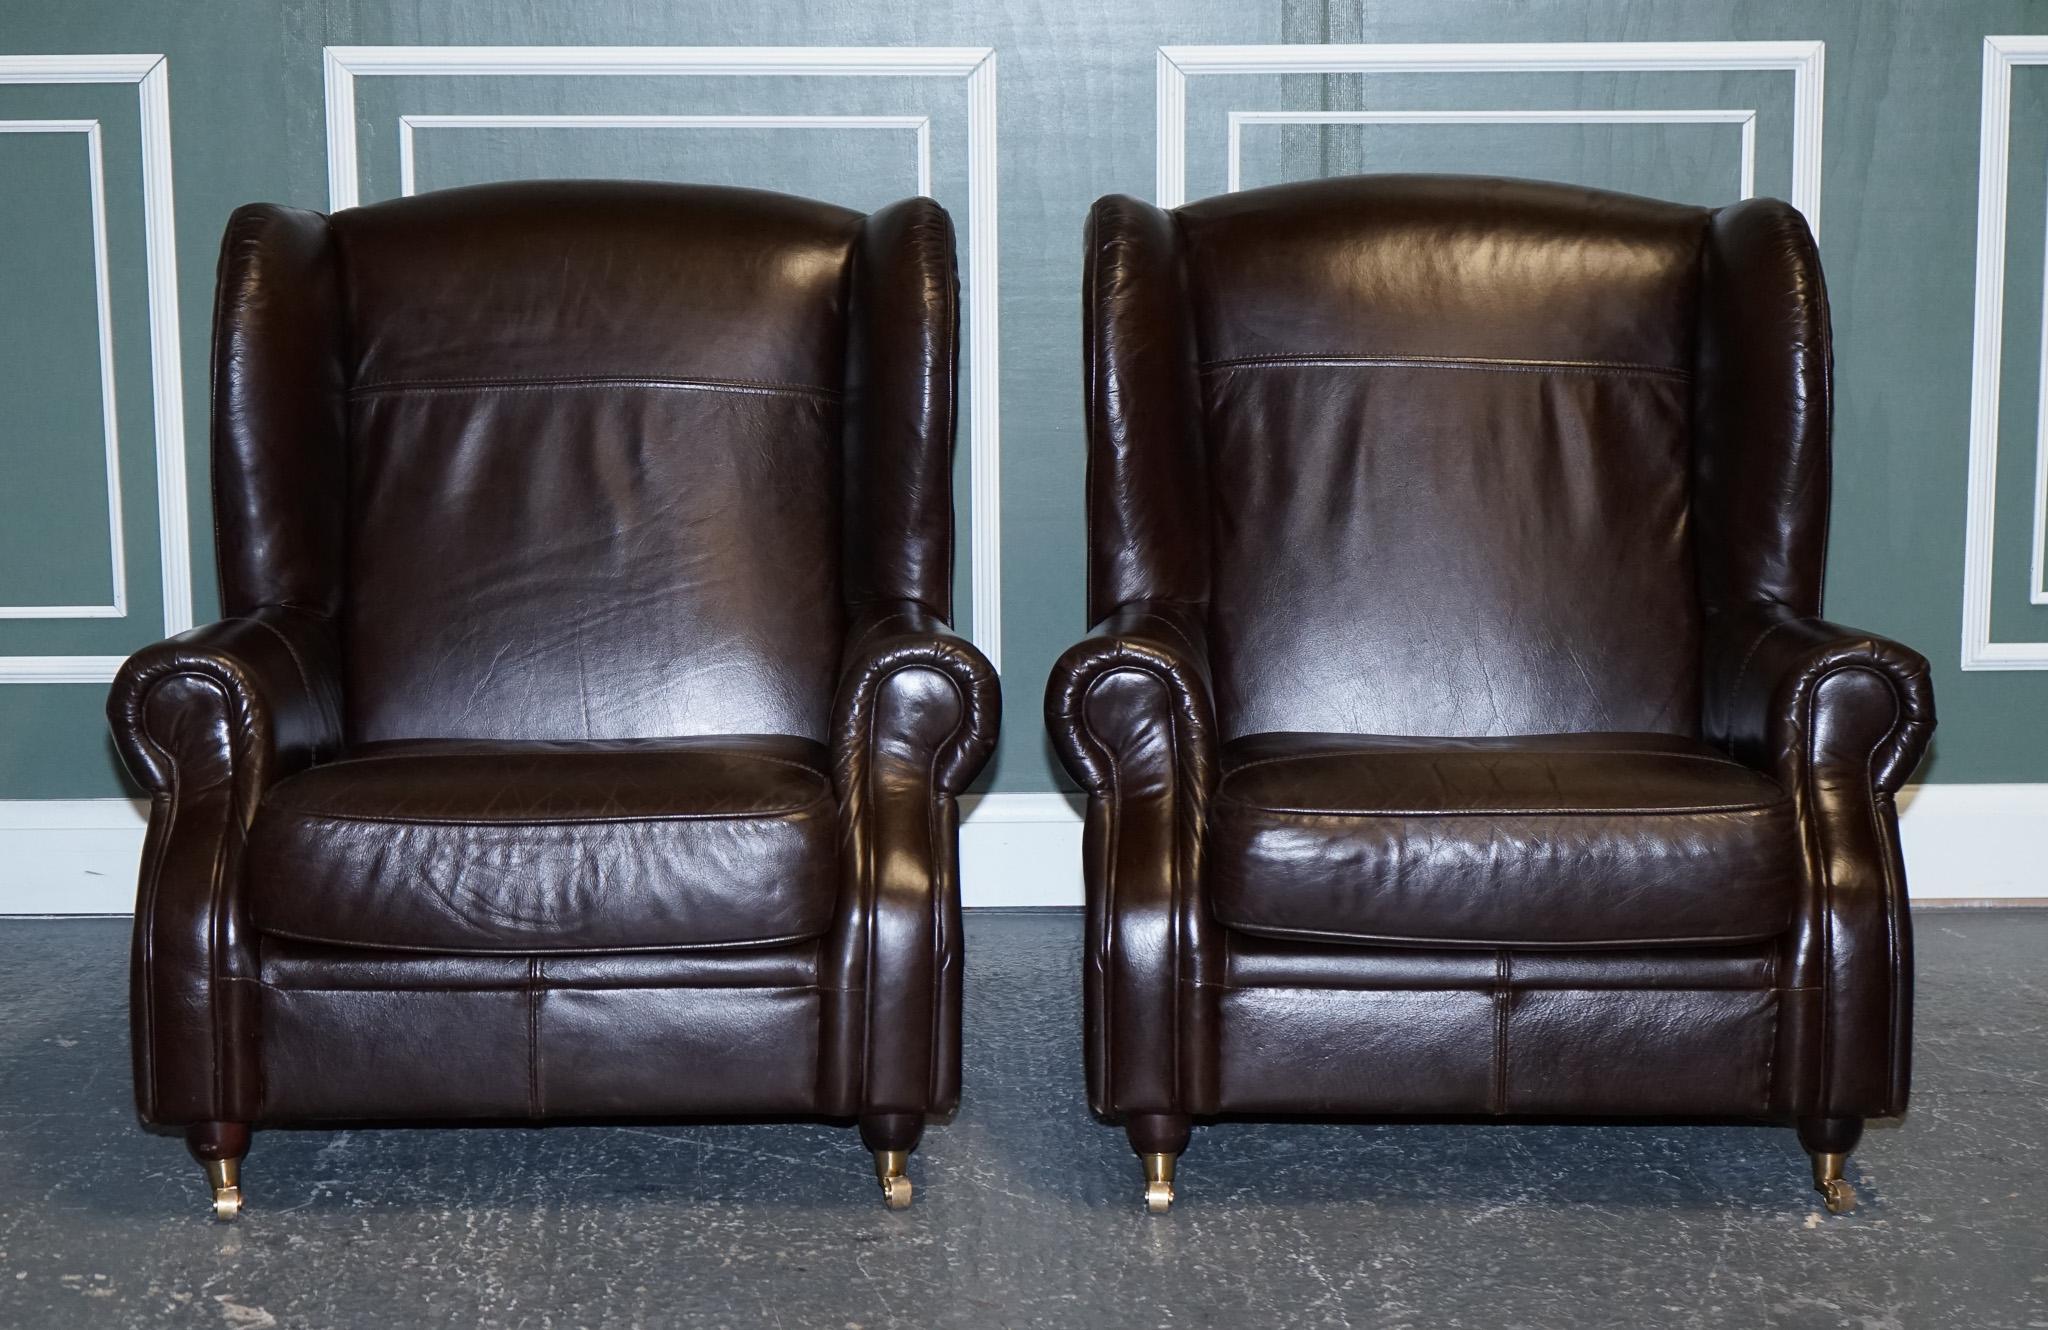 Nous sommes ravis de vous présenter une paire de fauteuils wingback en cuir brun chocolat.

Très belle paire, en très bon état de propreté.
Le cuir est redevenu très beau et ressemble à du neuf.

Nous avons une paire de deux ou trois places